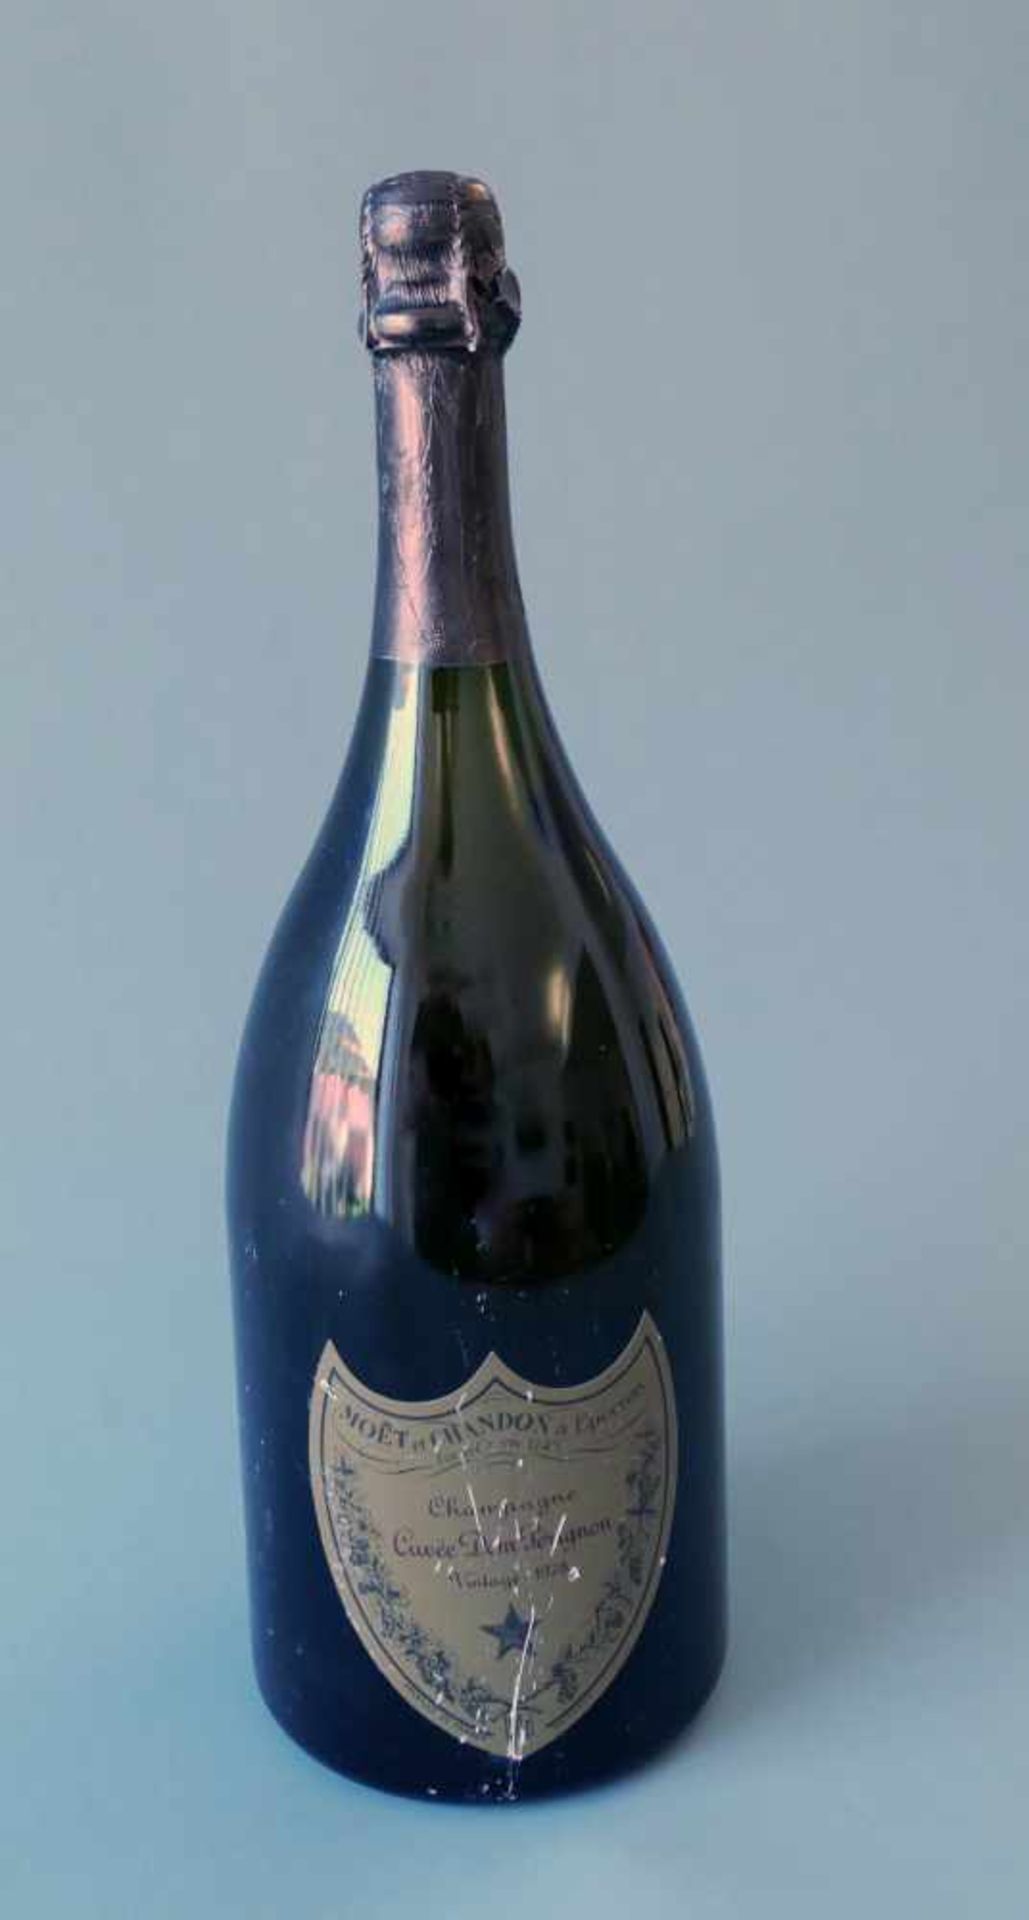 Moët ChandonChampagne Cuvée Dom Perignon Vintage, Jahrgang 1978, Inhalt 1500 ml. Épernay, Marne,